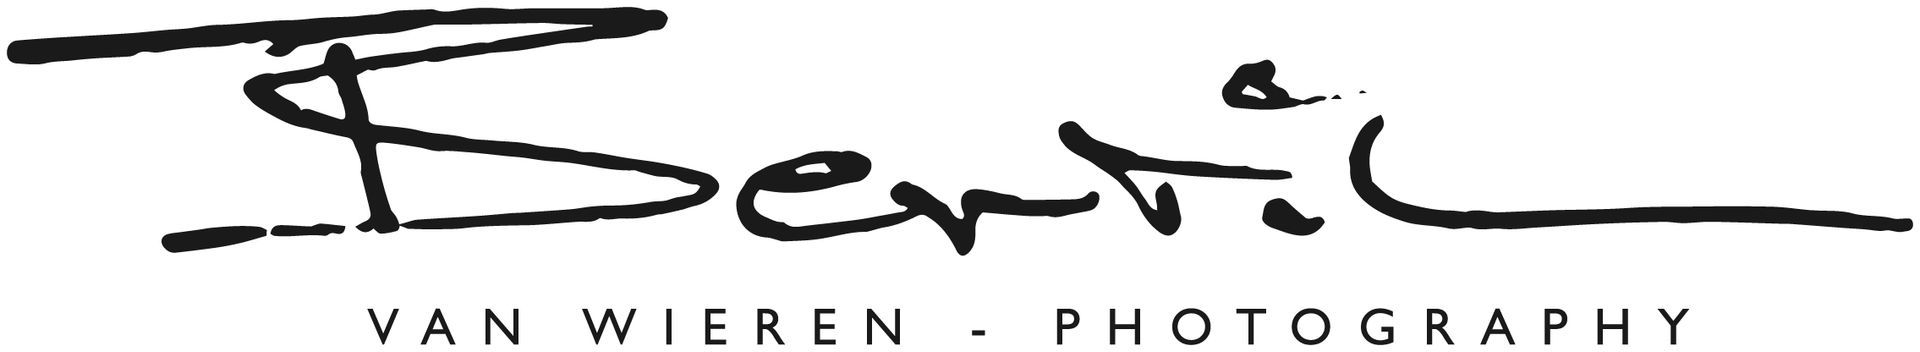 Een zwart-wit logo voor van wieren fotografie